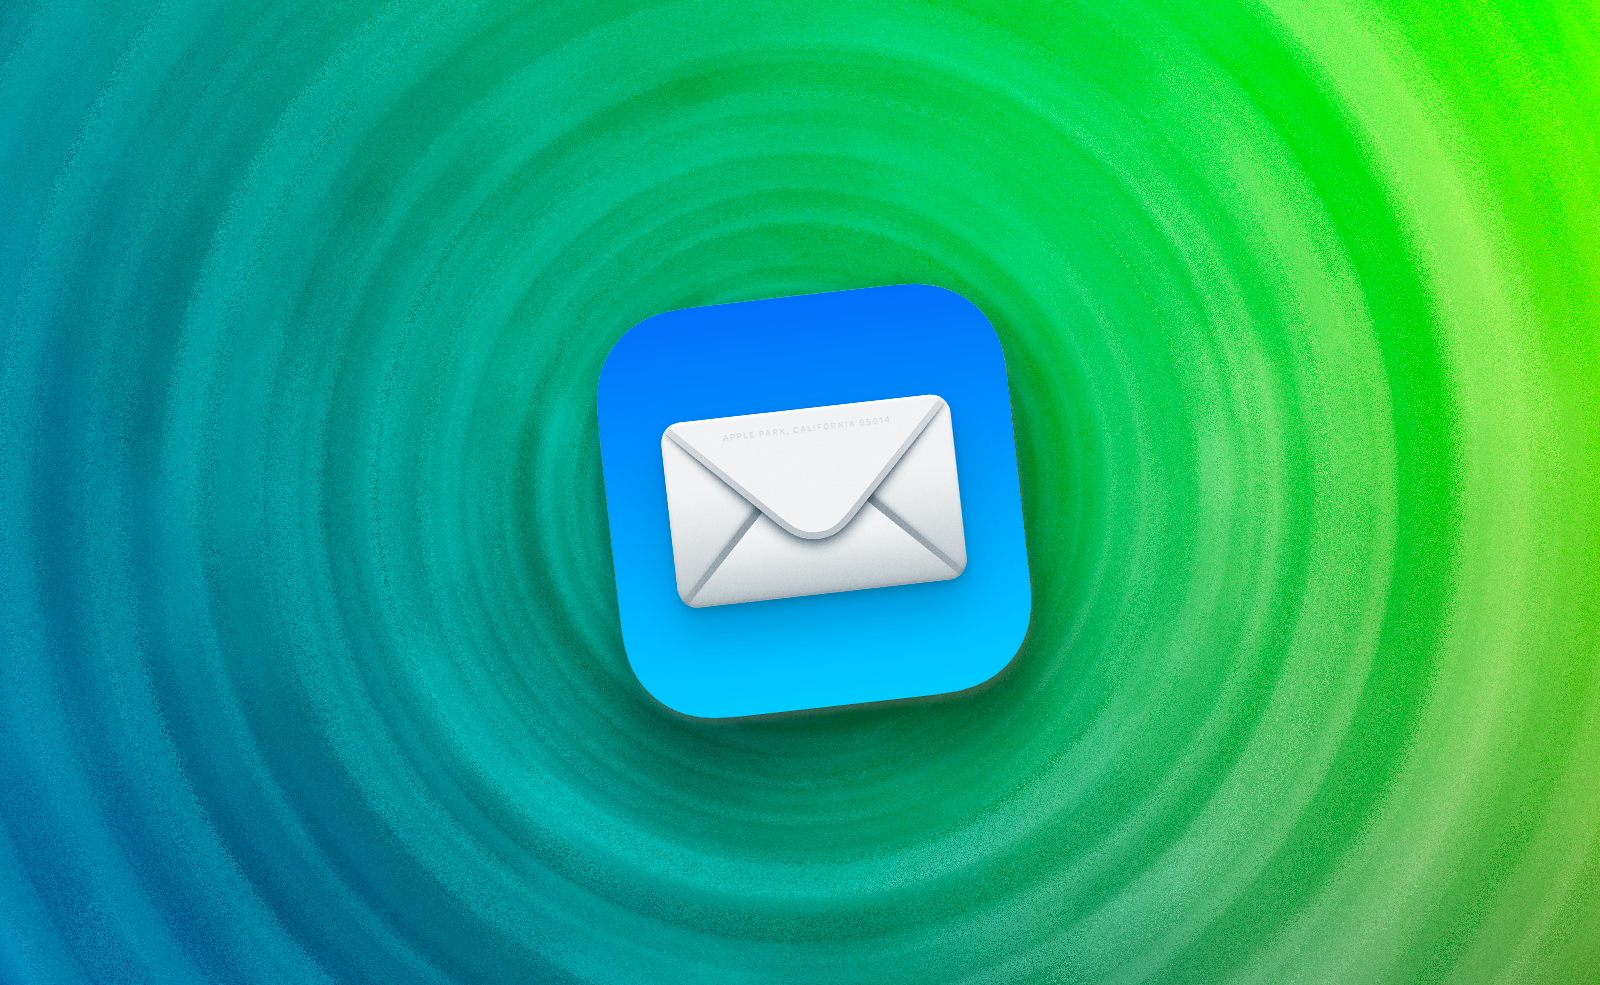 Mail • Sauvegardez vos courriers afin de les consulter ultérieurement